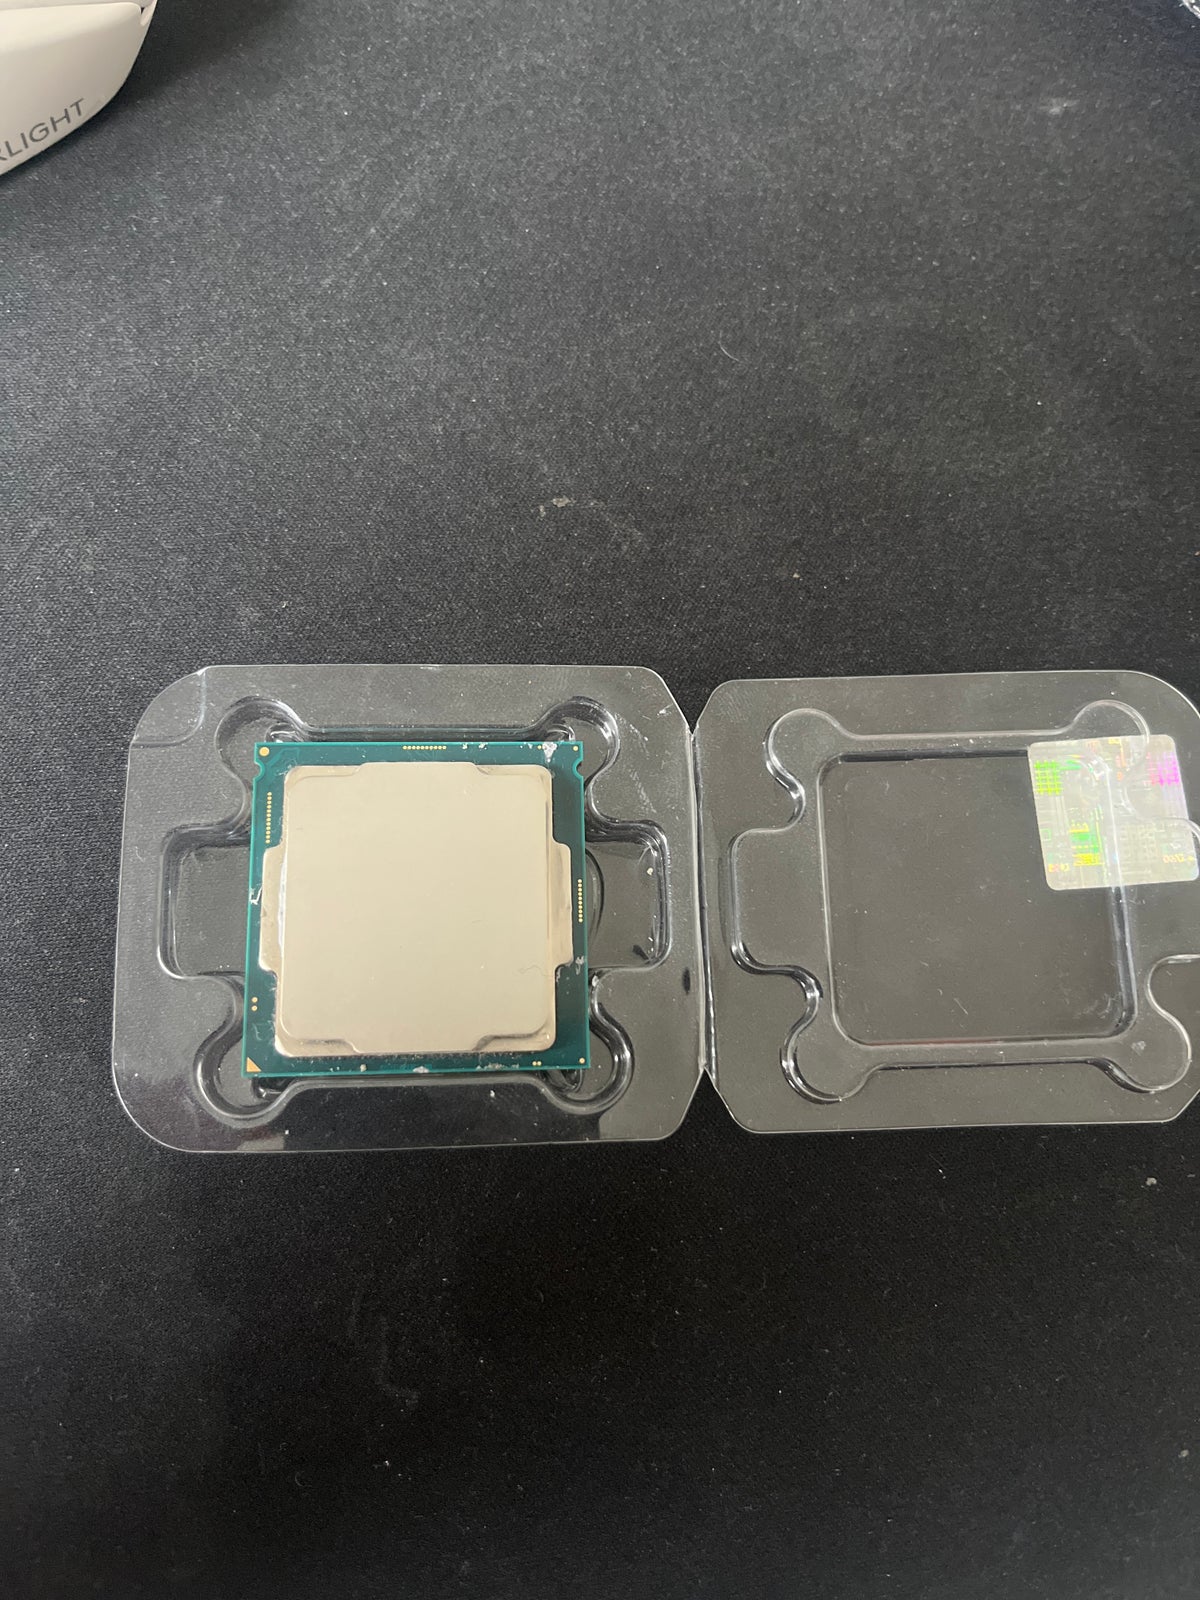 I5, Intel, I5 9400f